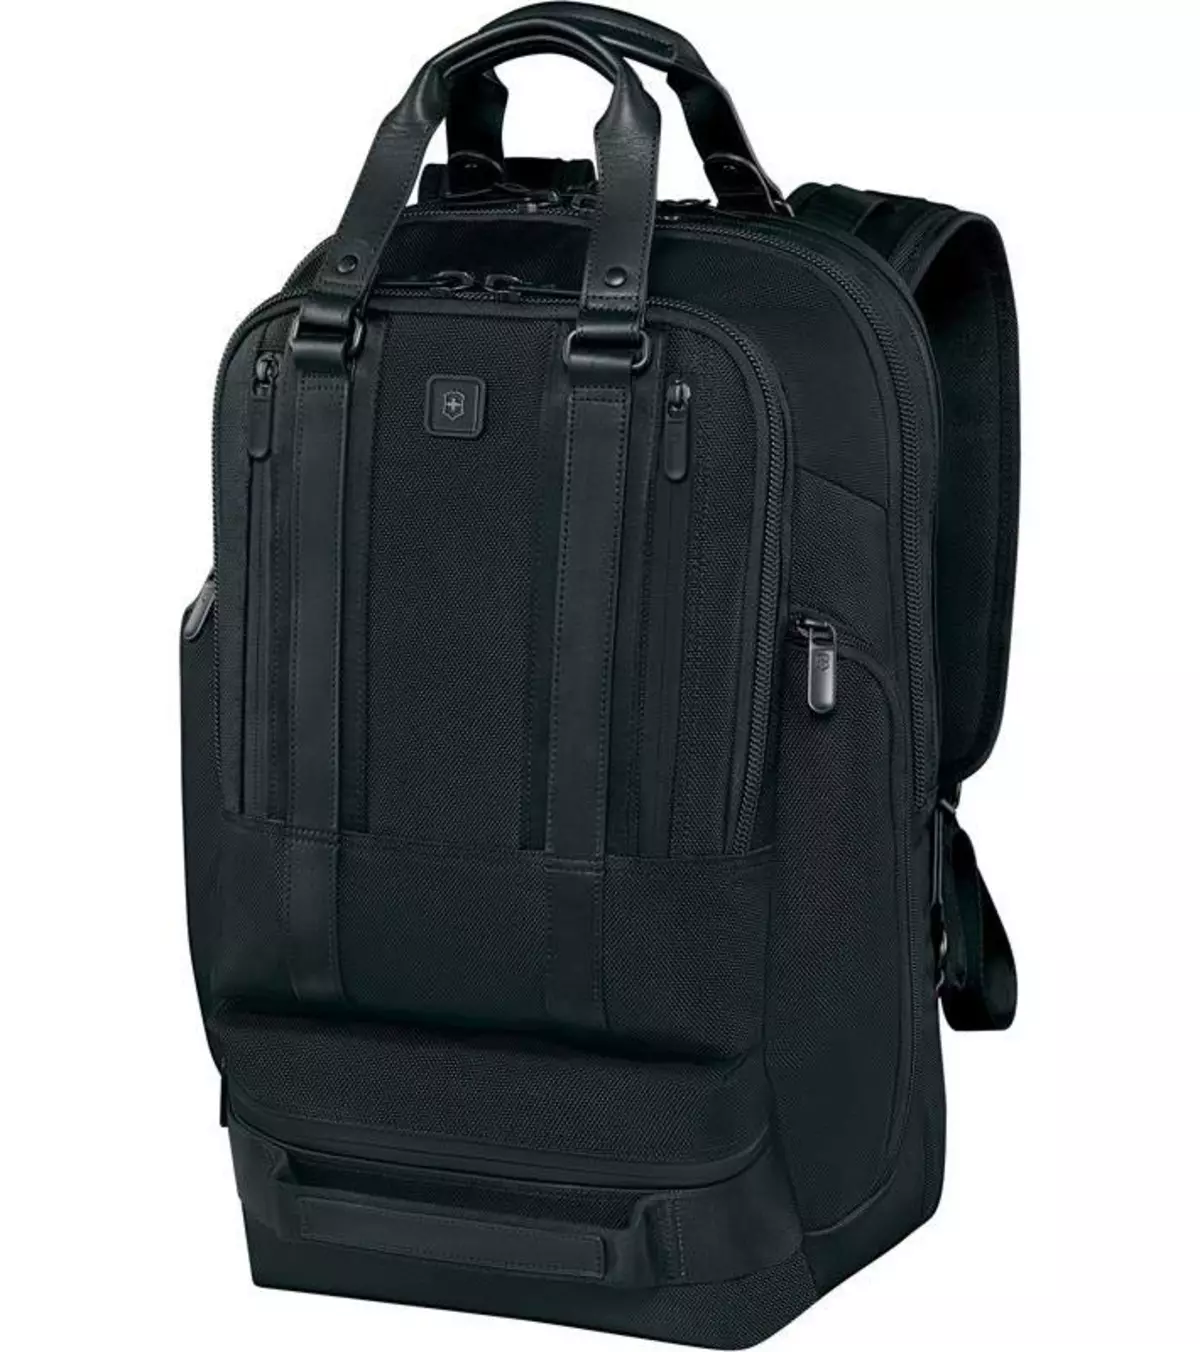 Nictorinox Backpacks: Modelos com uma alça de ombro, faixa de modelo. Como distinguir o original? Avaliações 23660_6